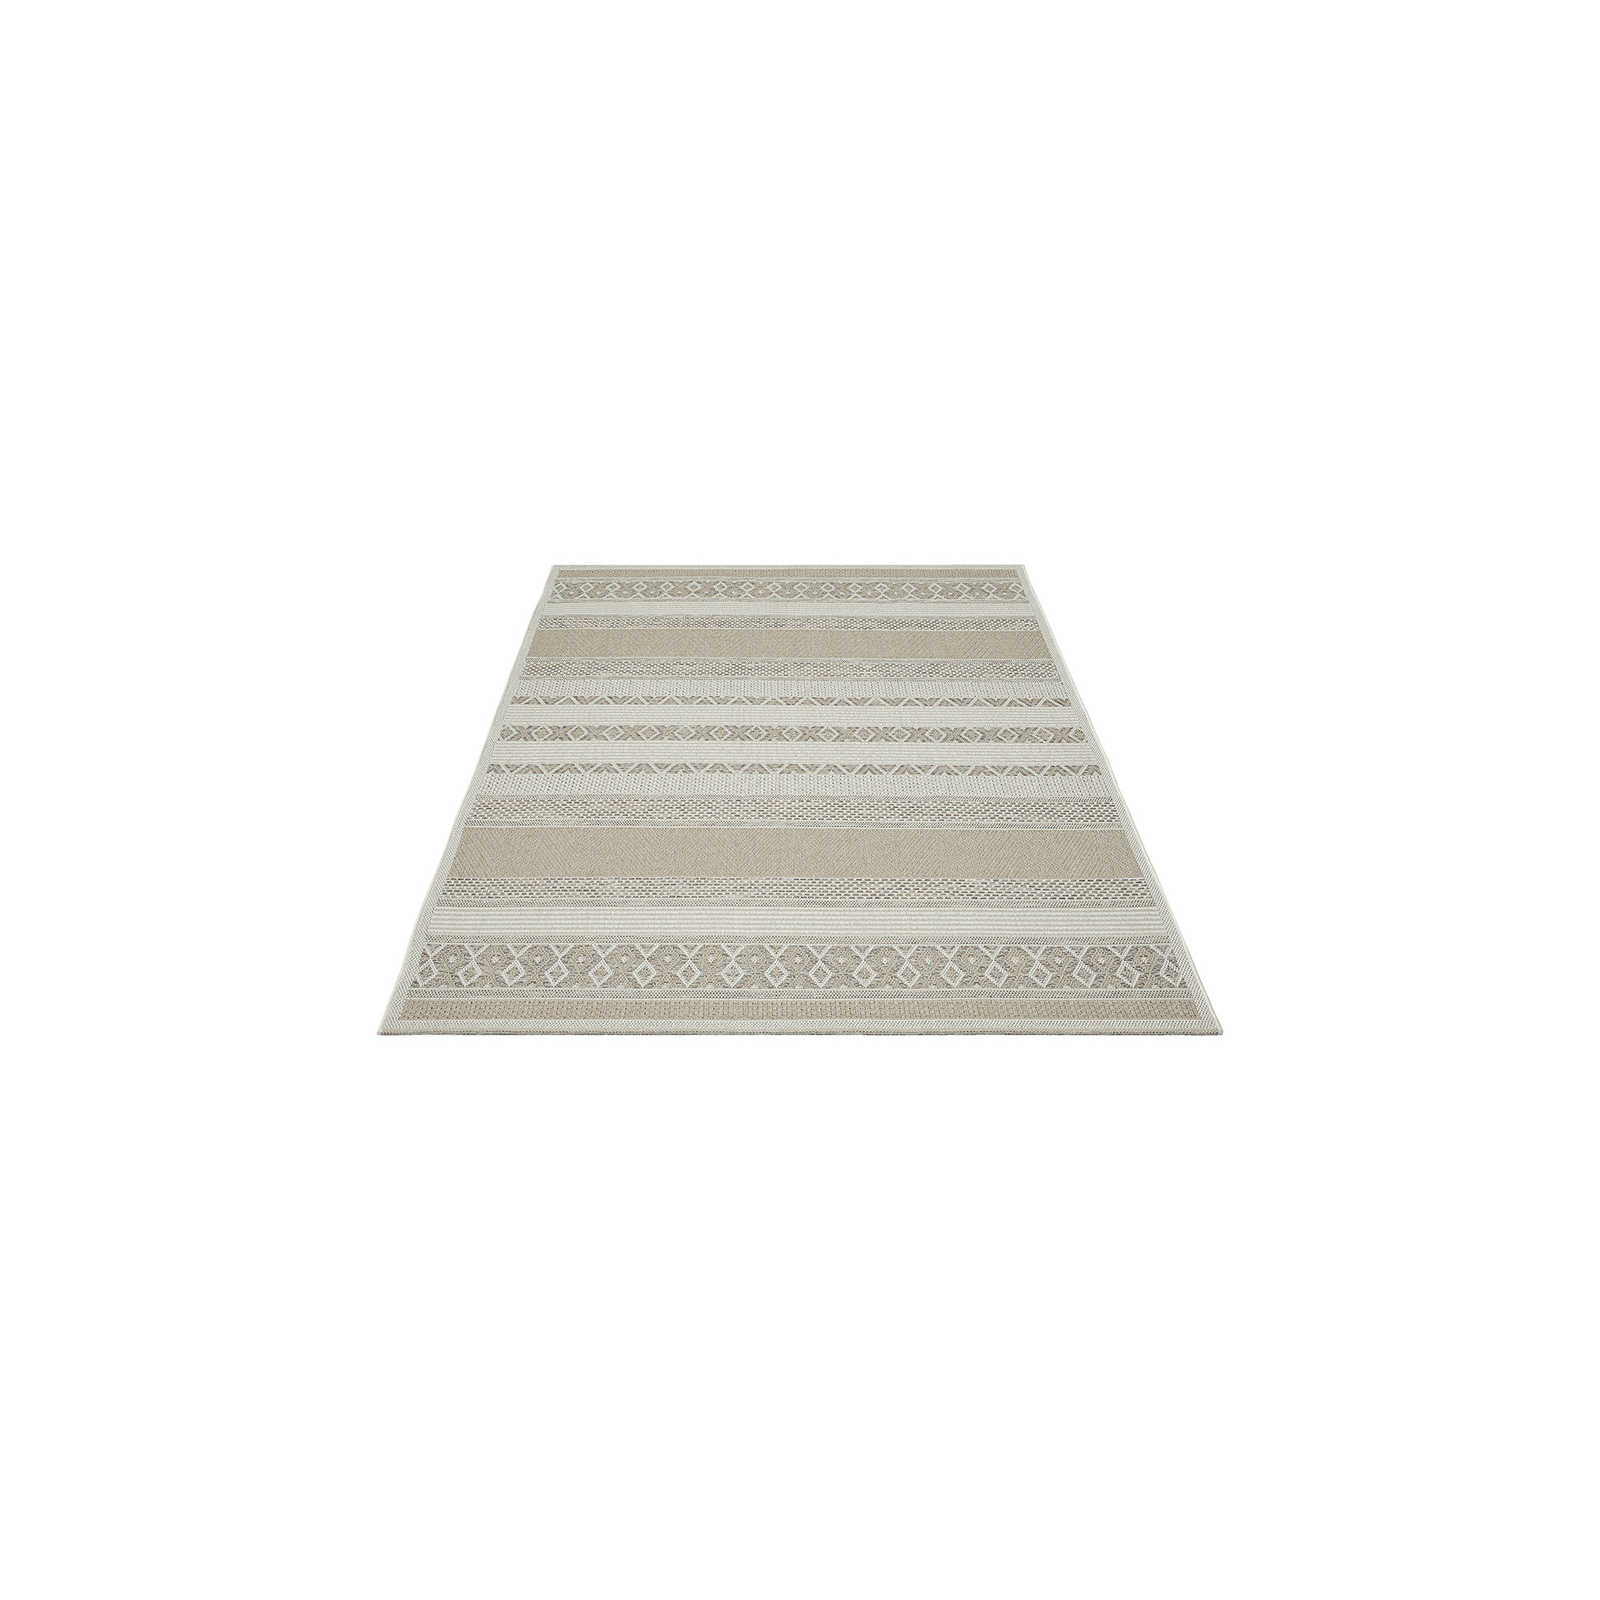 Outdoor Teppich aus Flachgewebe in schlichten Beige – 160 x 120 cm
